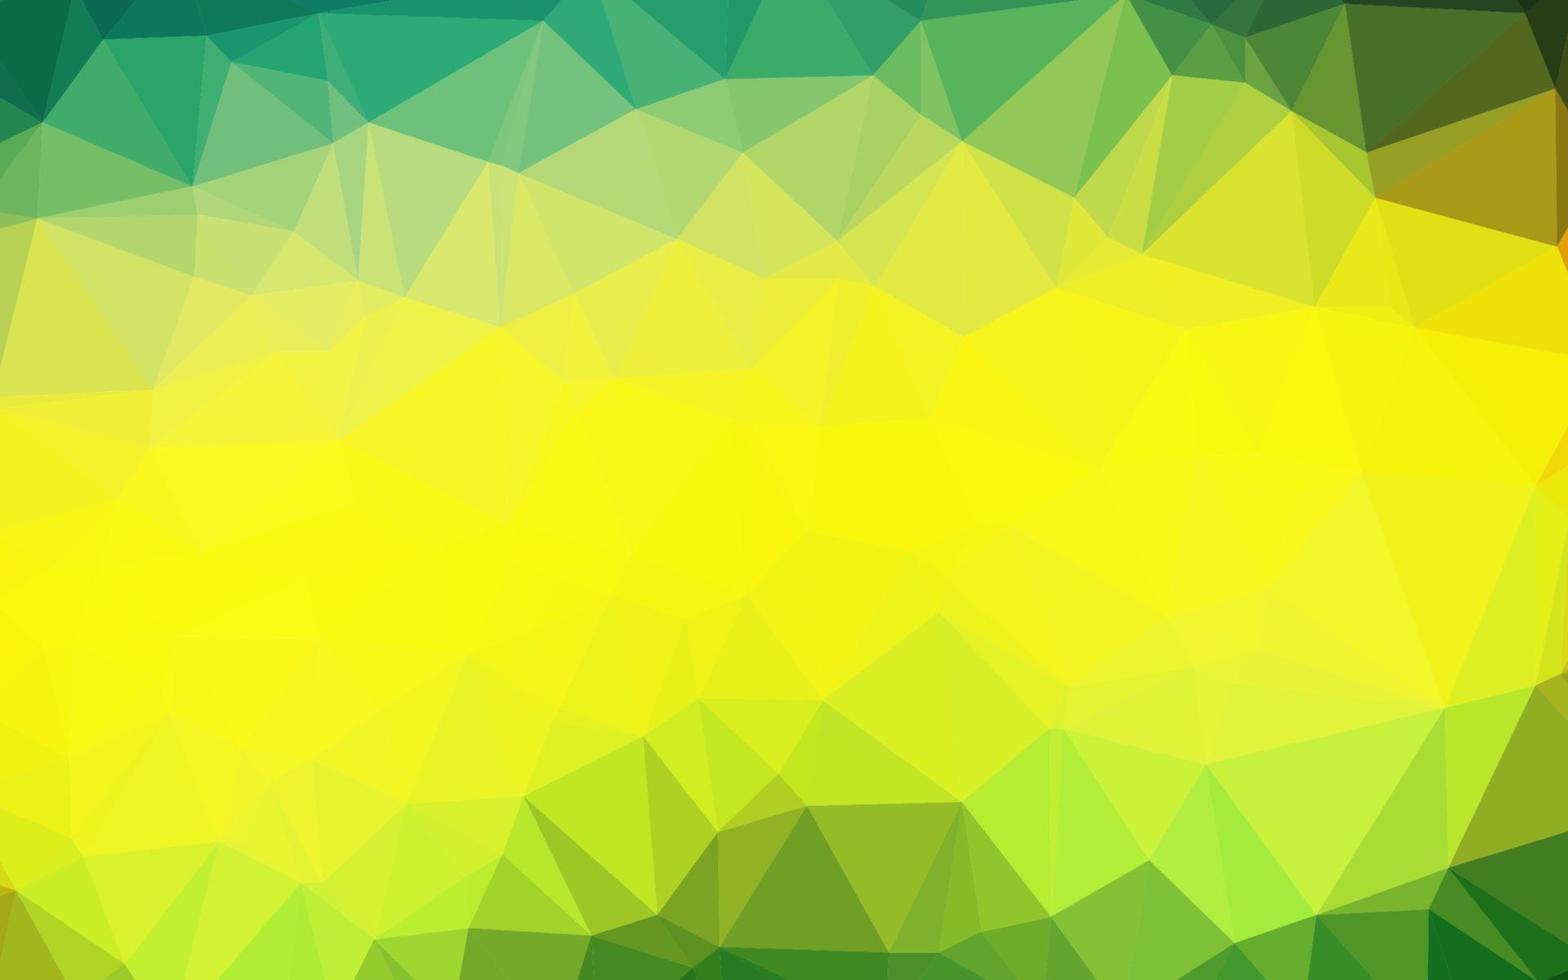 motif triangulaire brillant de vecteur vert foncé, jaune.